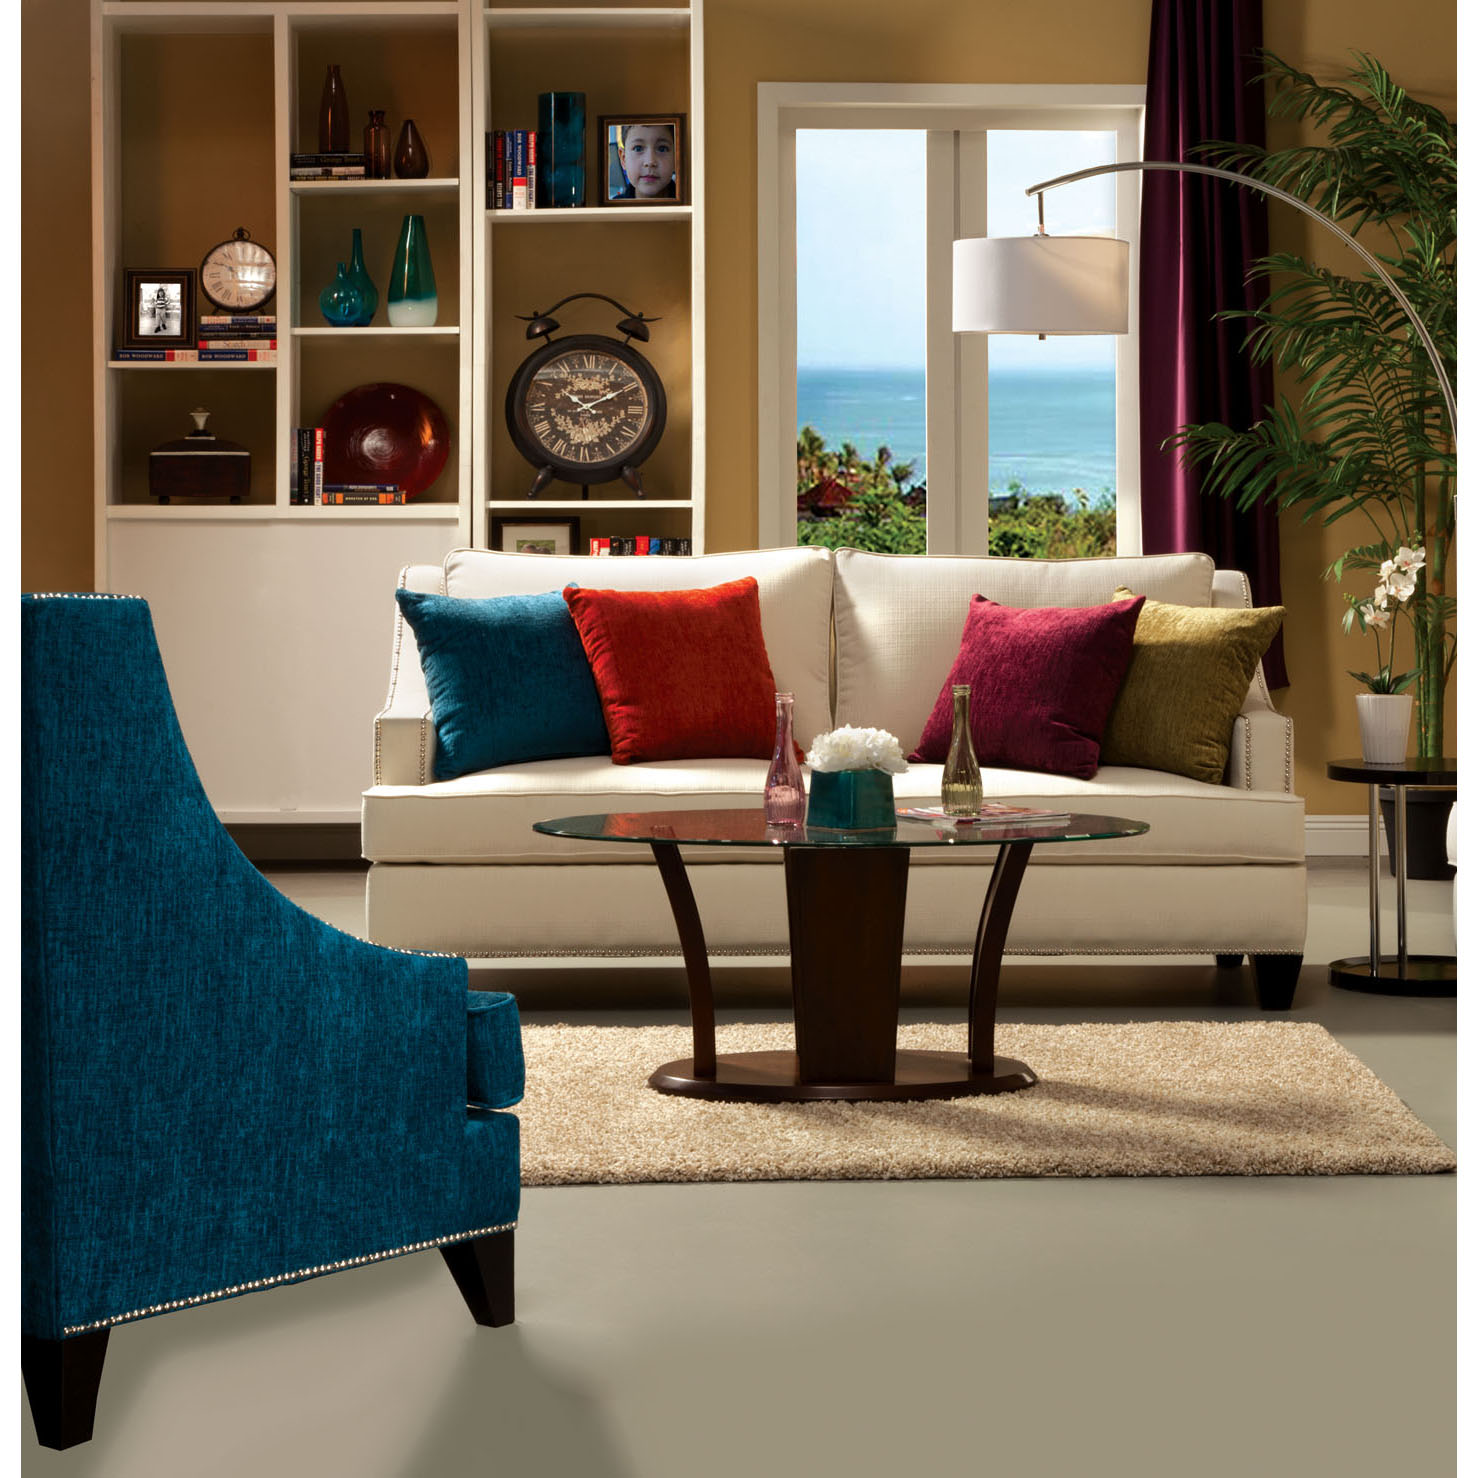 Furniture of America Domingo Contemporary Style Sofa